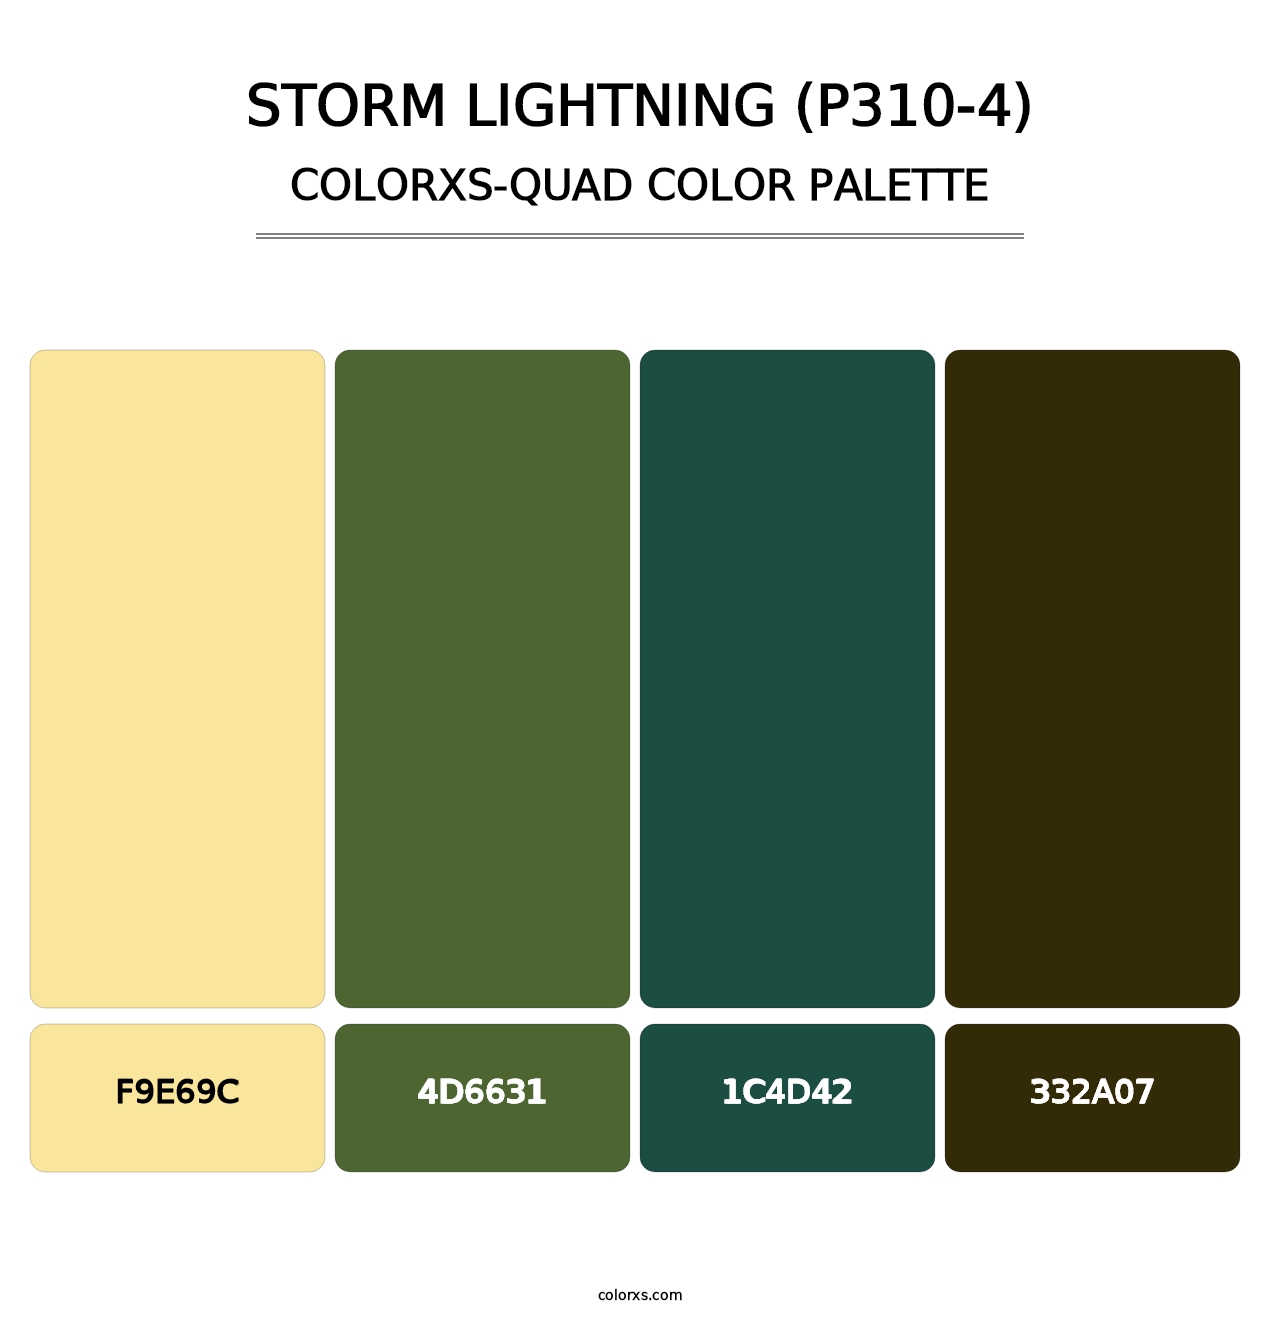 Storm Lightning (P310-4) - Colorxs Quad Palette